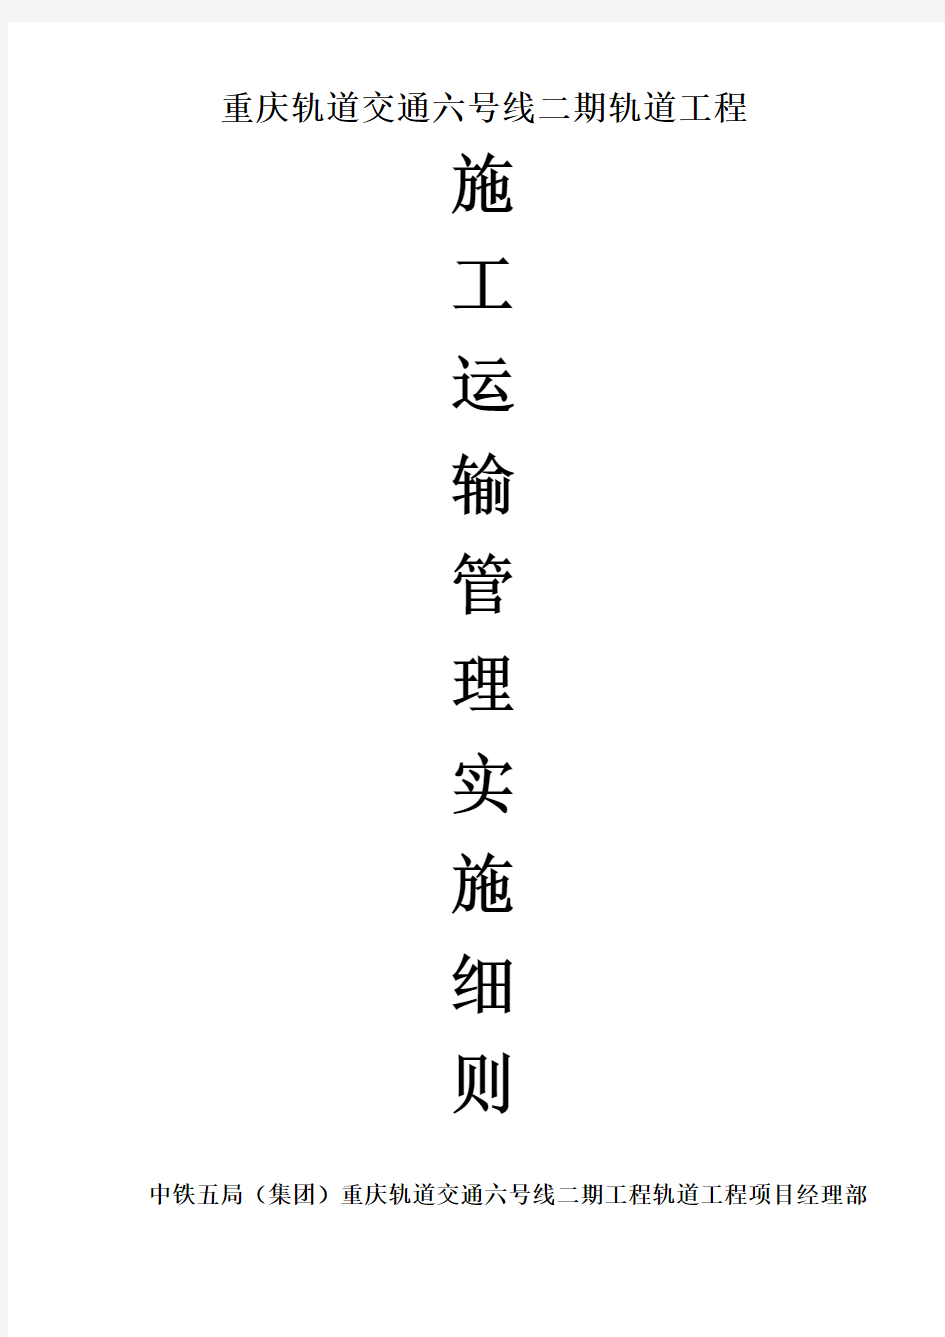 重庆六号线轨道工程施工运输管理实施细则(张鑫)最终定稿